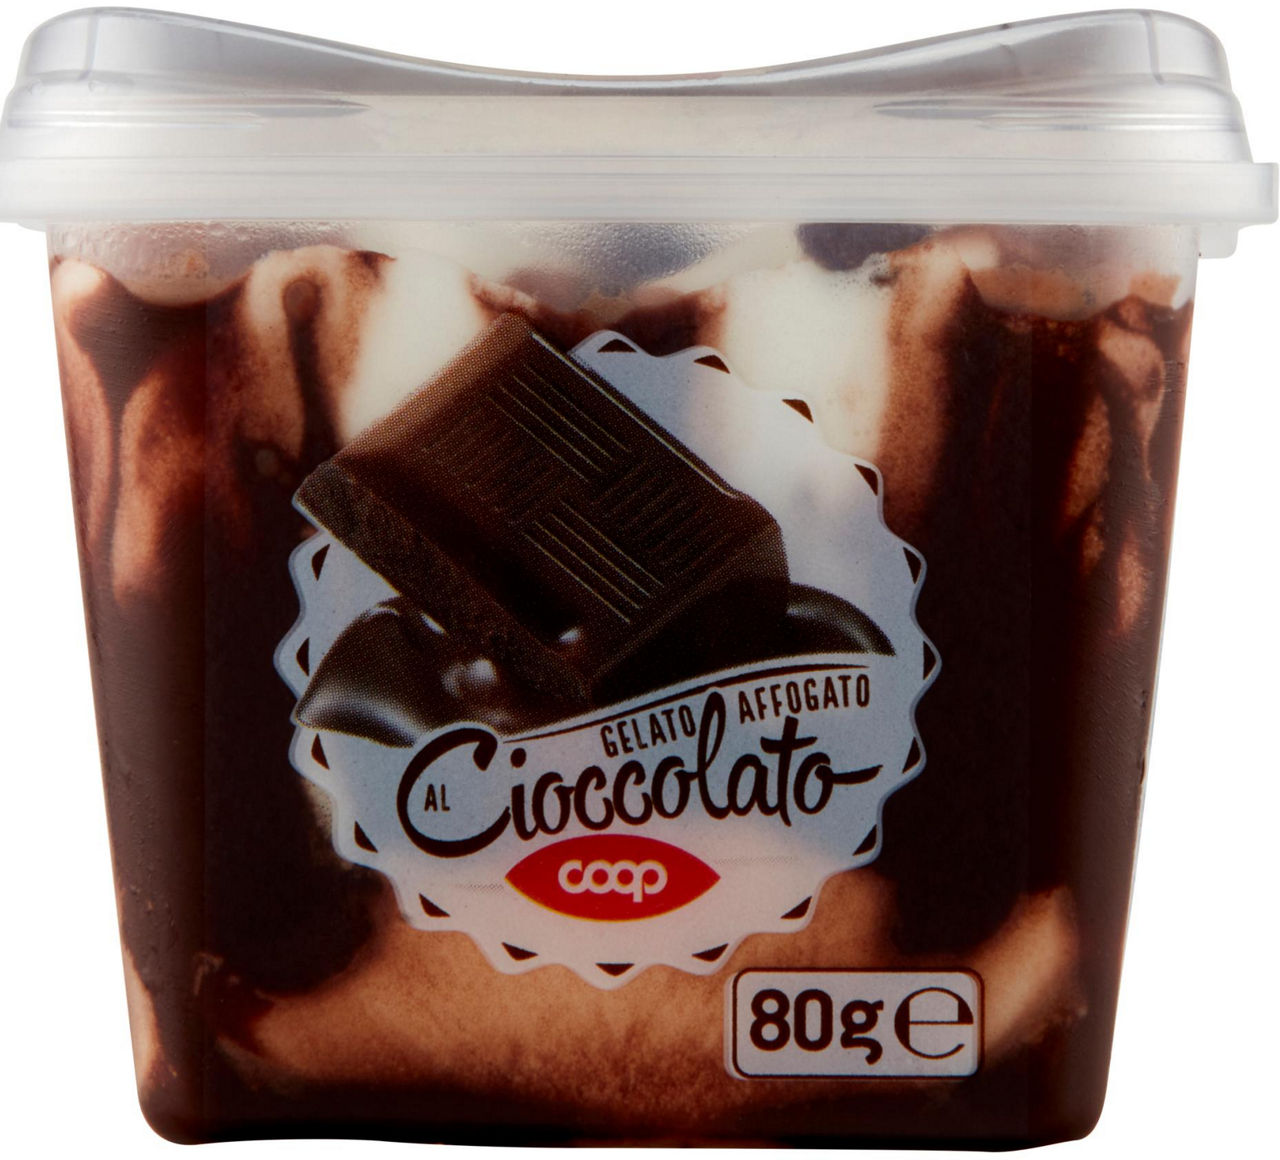 Coppetta gelato affogato al cioccolato coop gr 80